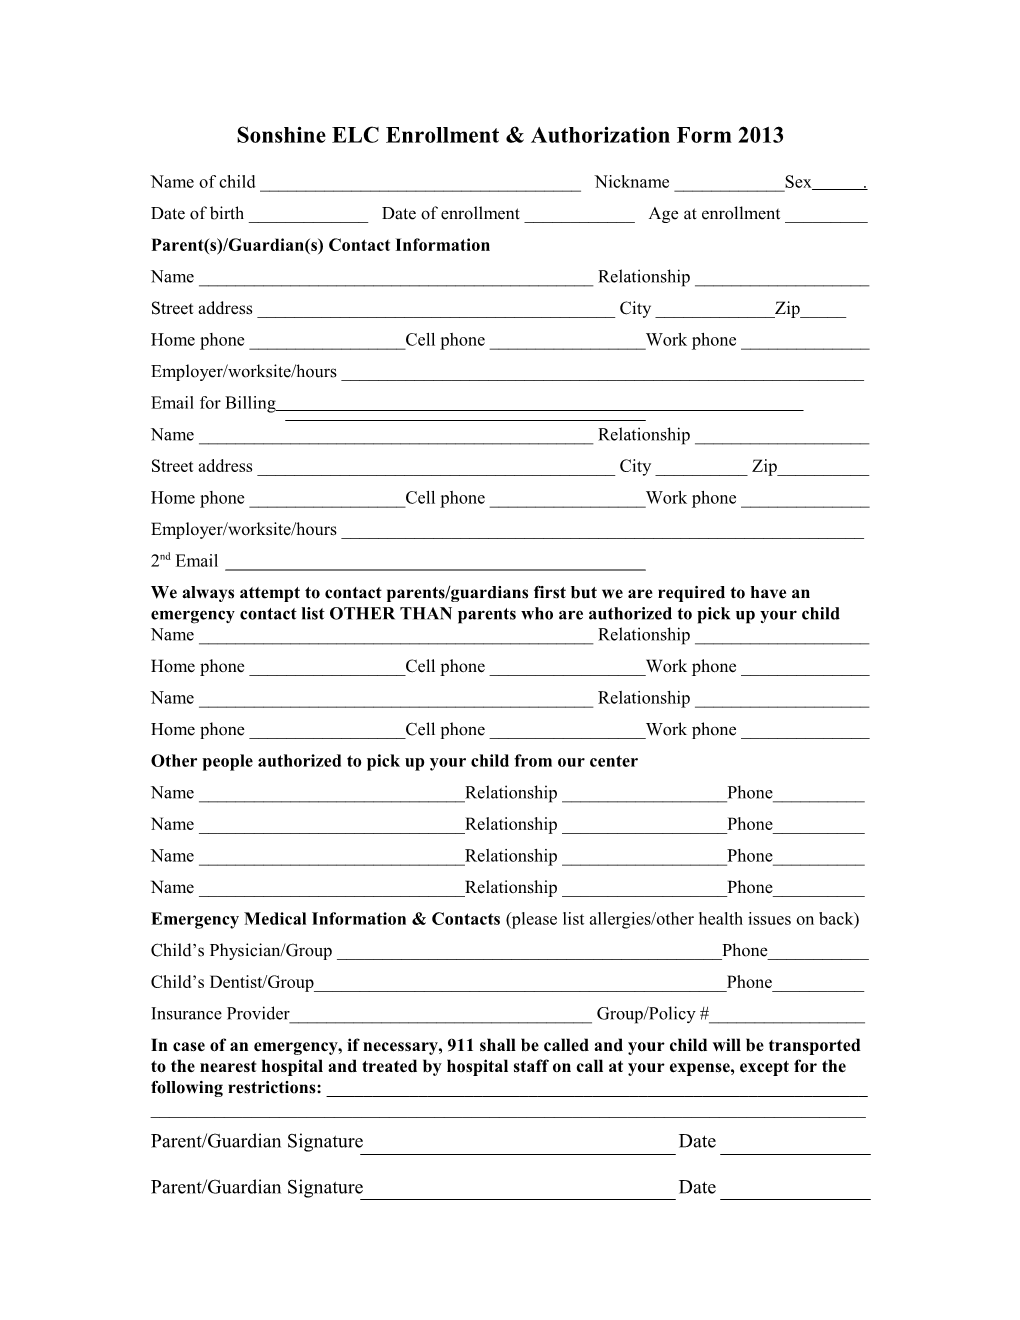 Sonshine ELC Enrollment & Authorization Form 2012